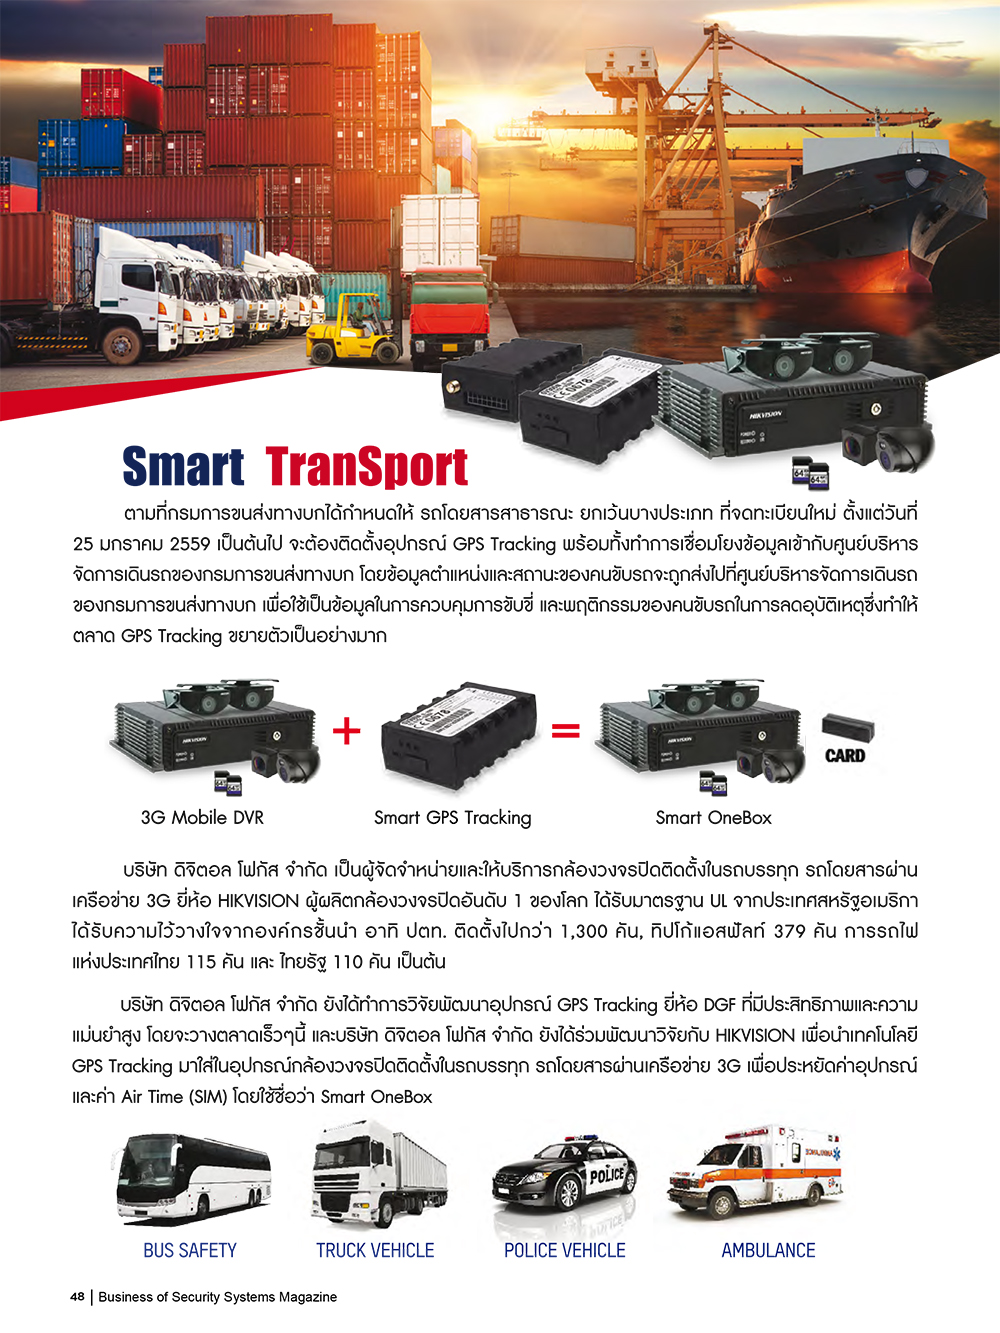 Smart TranSport HIK VISION